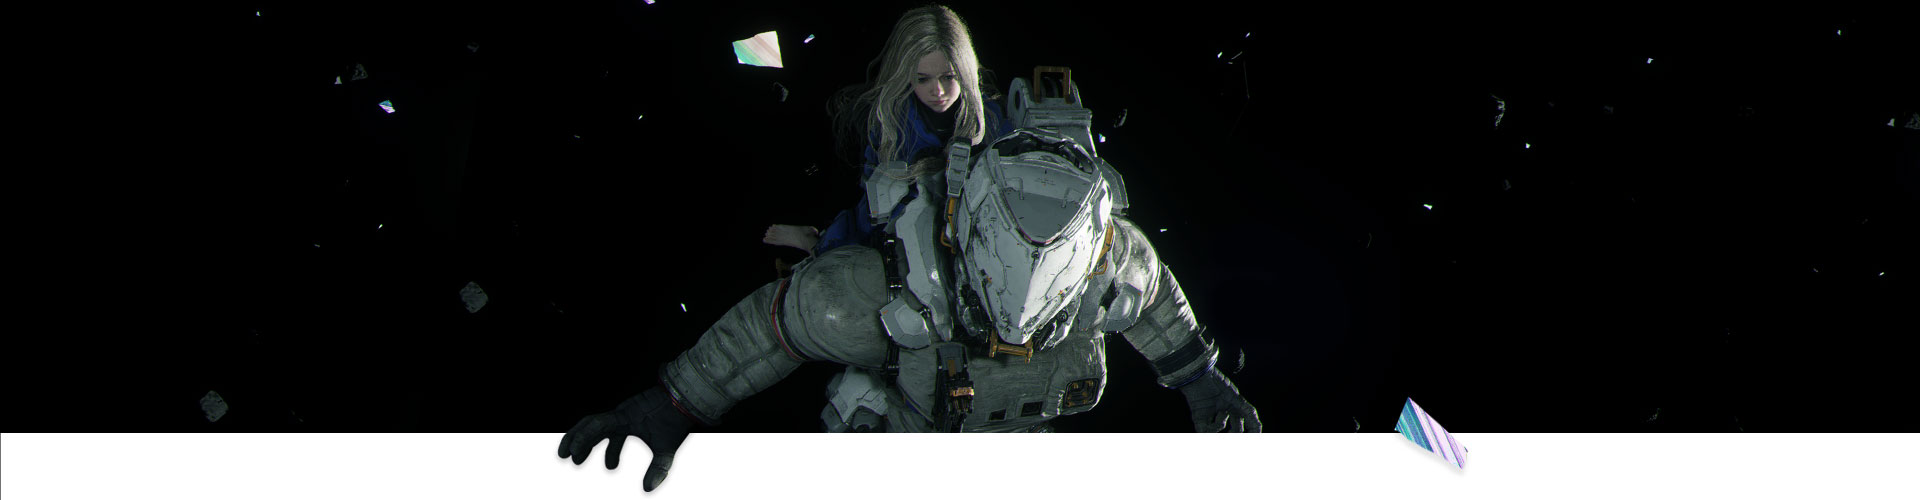 Een meisje zit op een astronaut in de ruimte